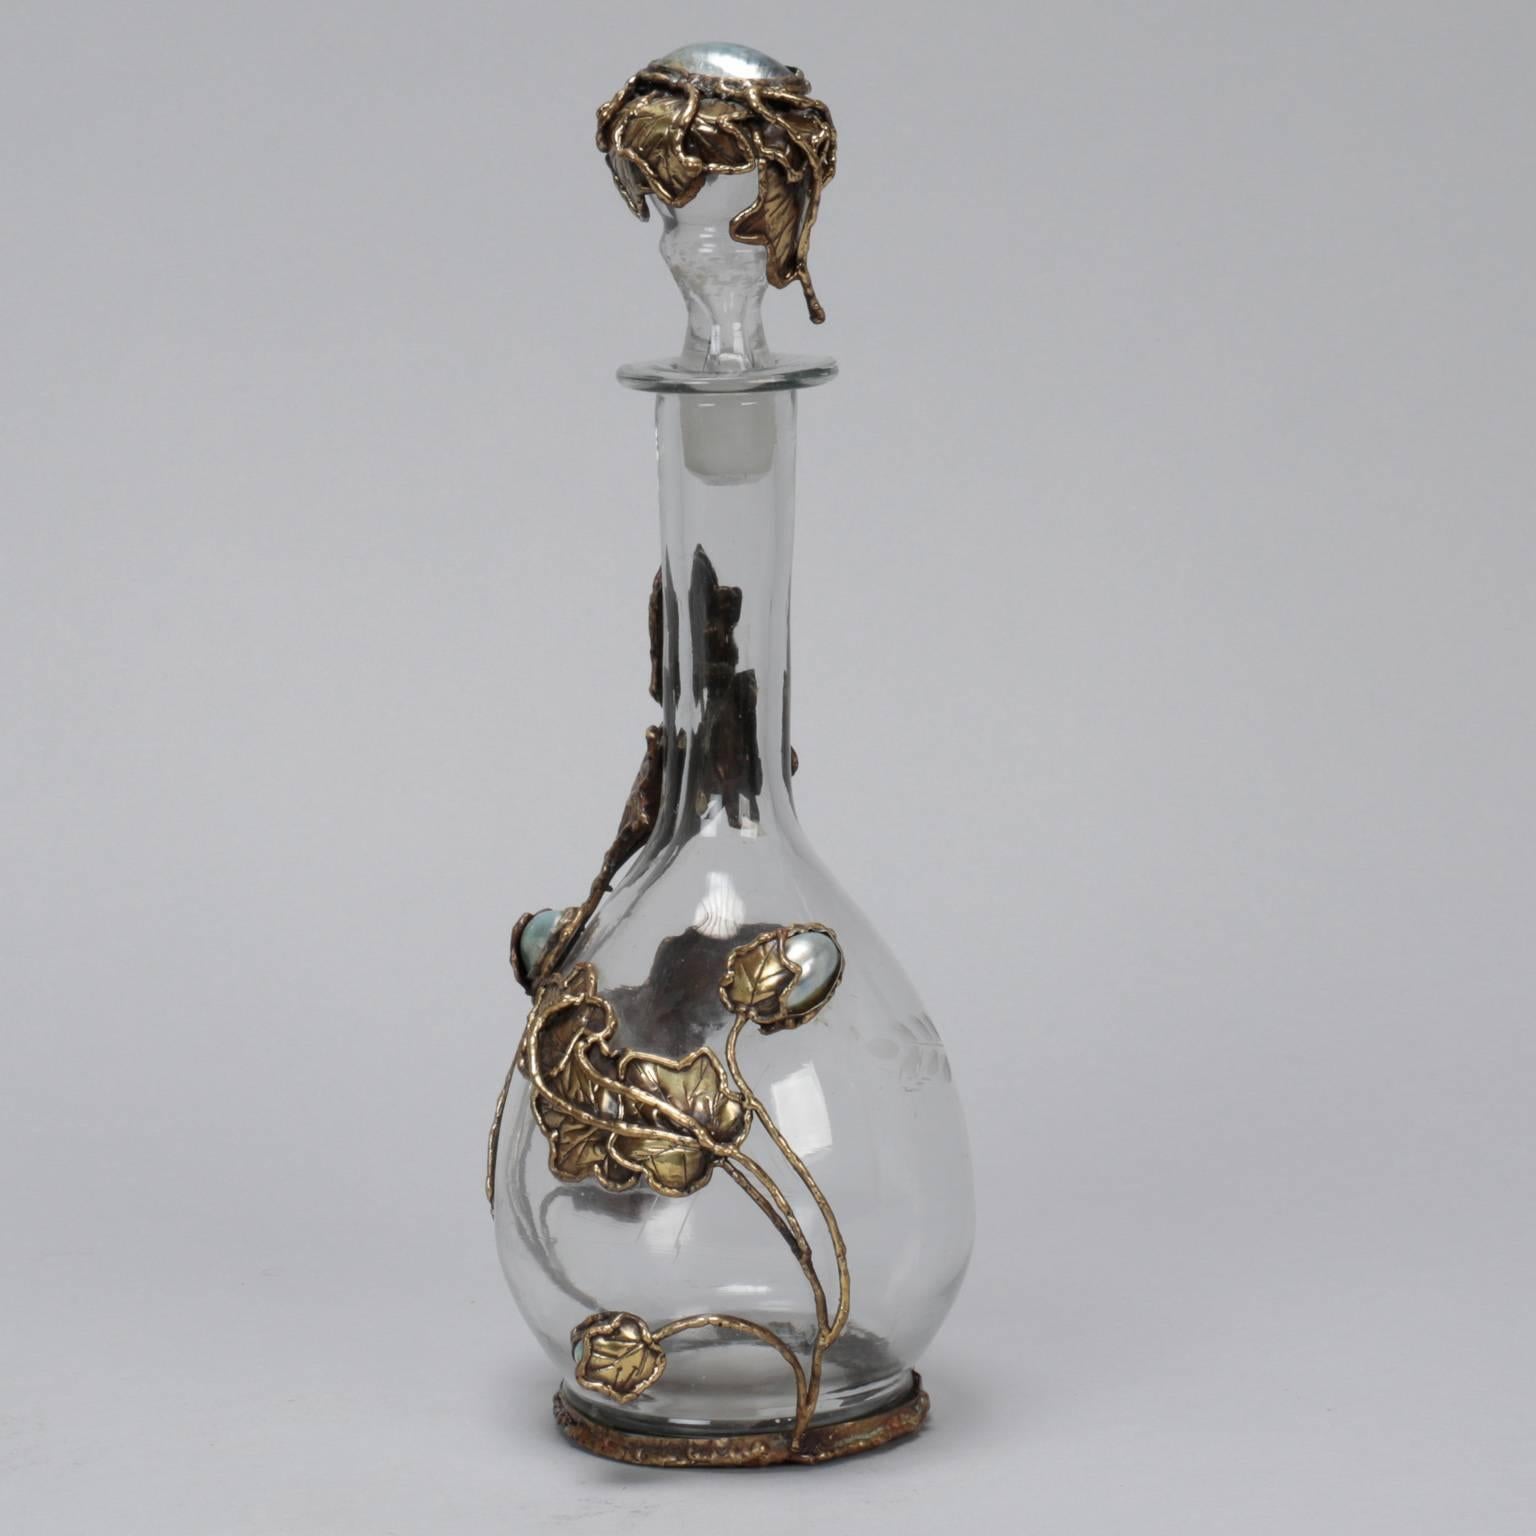 Trouvée en Italie, cette carafe en verre transparent est ornée de vignes feuillues en métal forgé à la main dans des tons de laiton qui entourent la bouteille et de perles d'eau douce. Signé par Lionel. D'autres pièces de cet artiste sont également